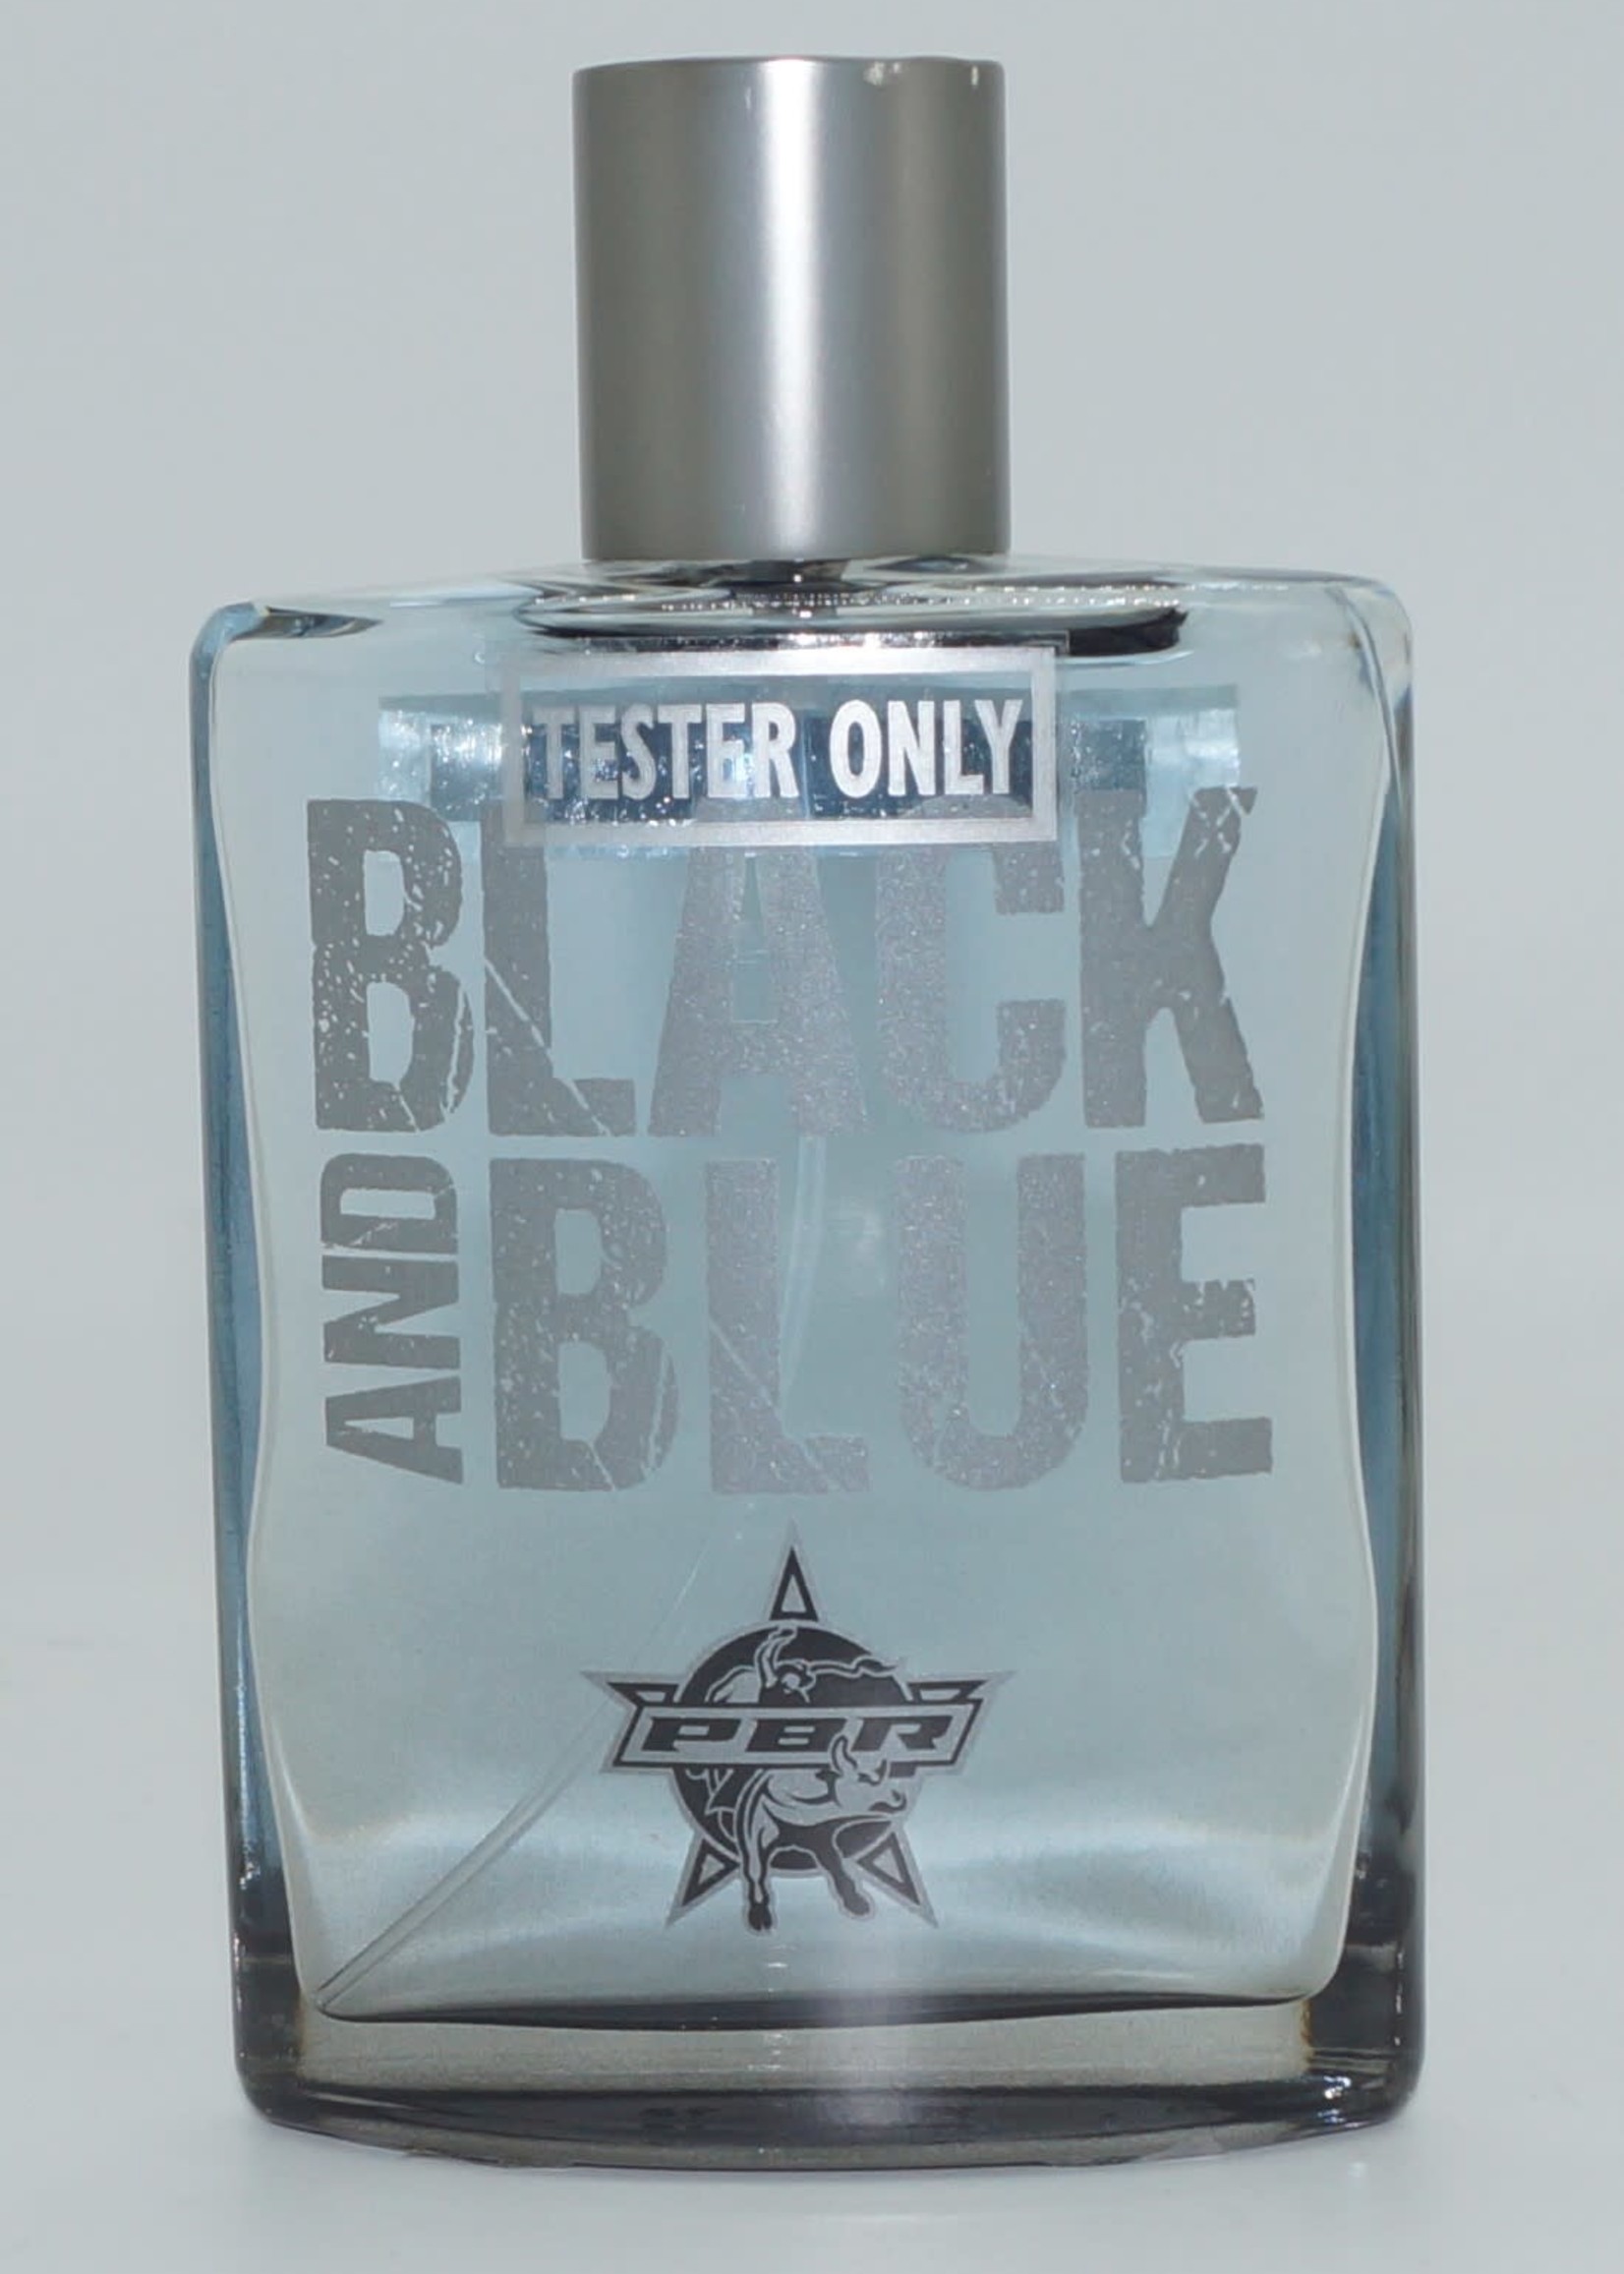 Tru Fragrance PBR Black and Blue Cologne Spray, 3.4 oz 92235